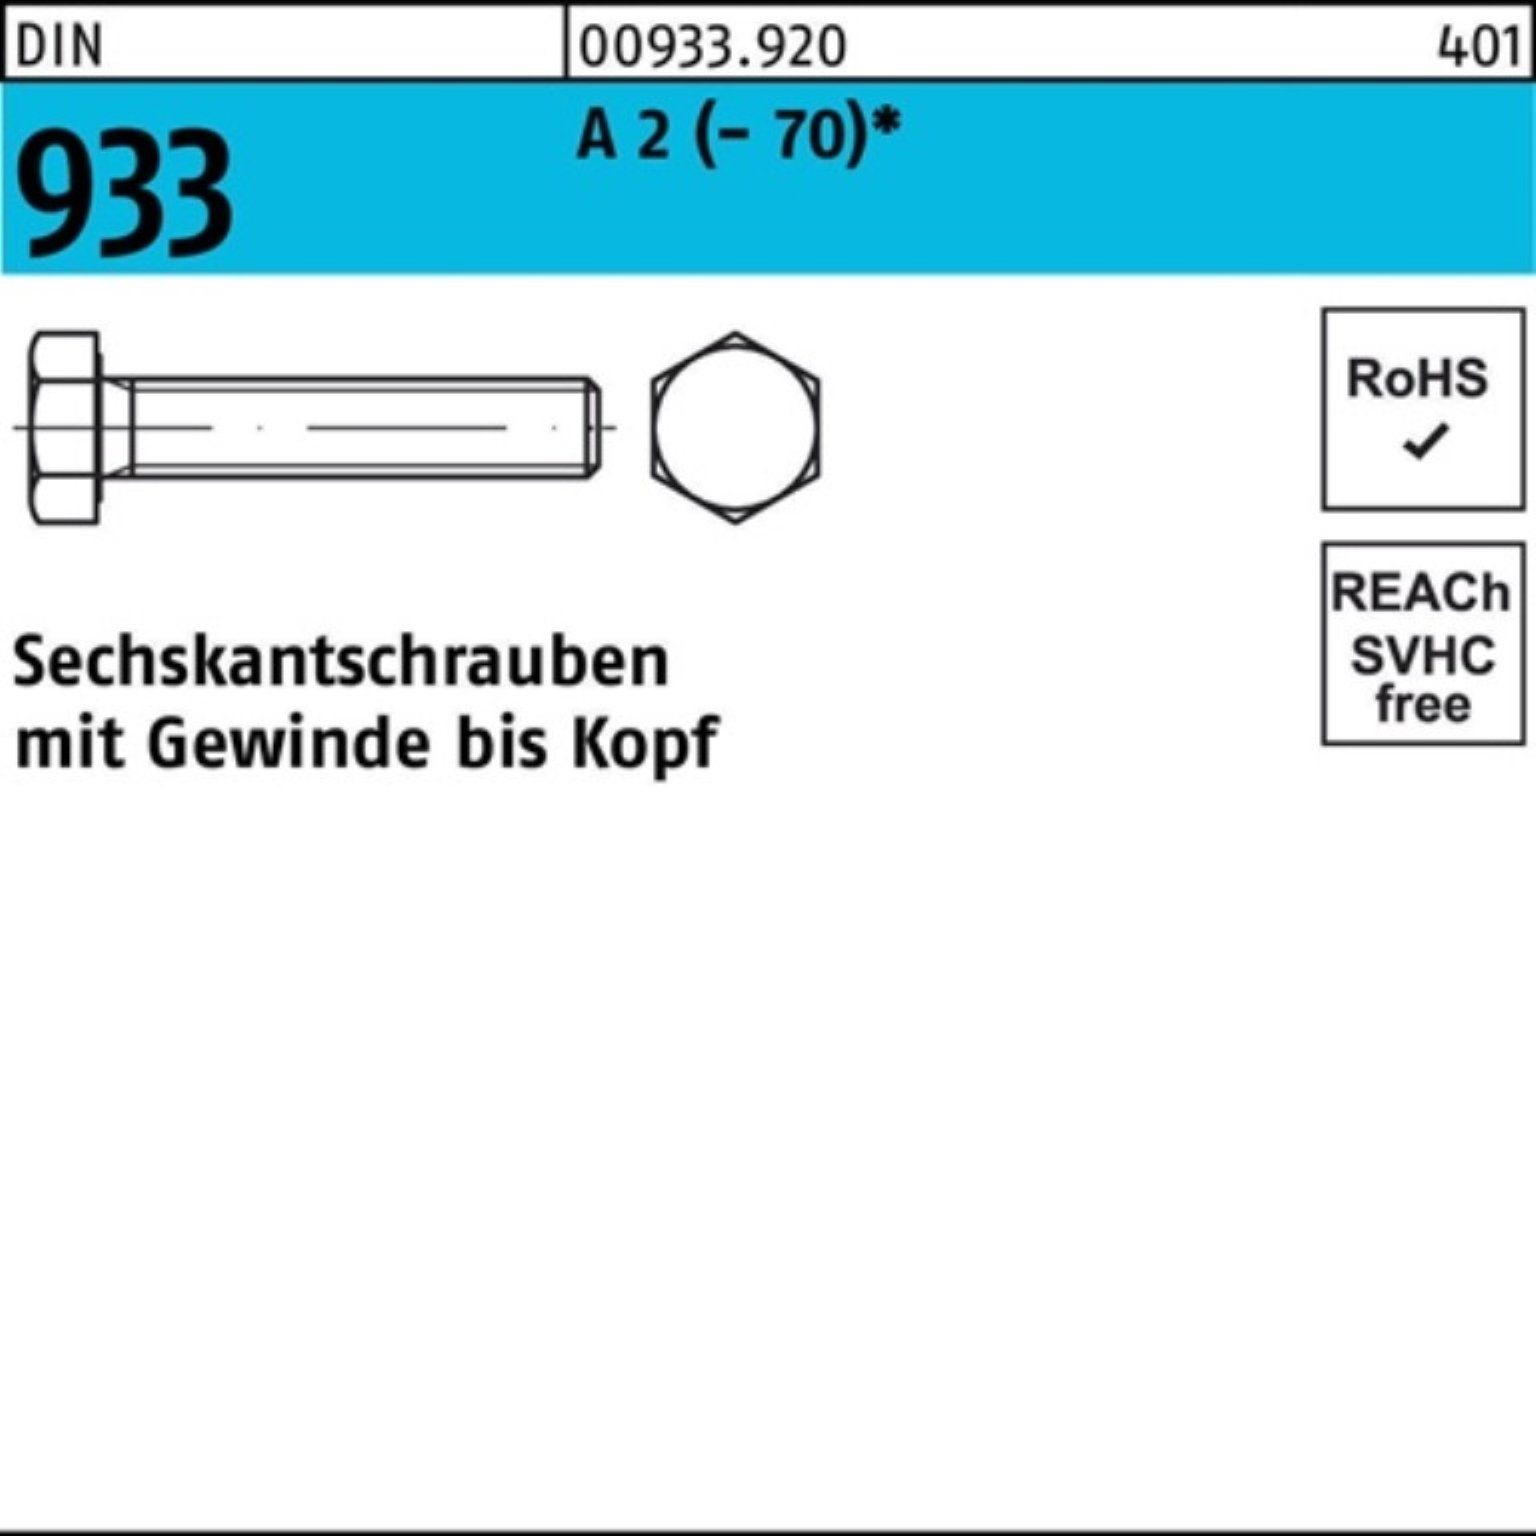 Stück DIN Sechskantschraube 933 Sechskantschraube Reyher 100er 70 VG 1 DI Pack A (70) M22x 2